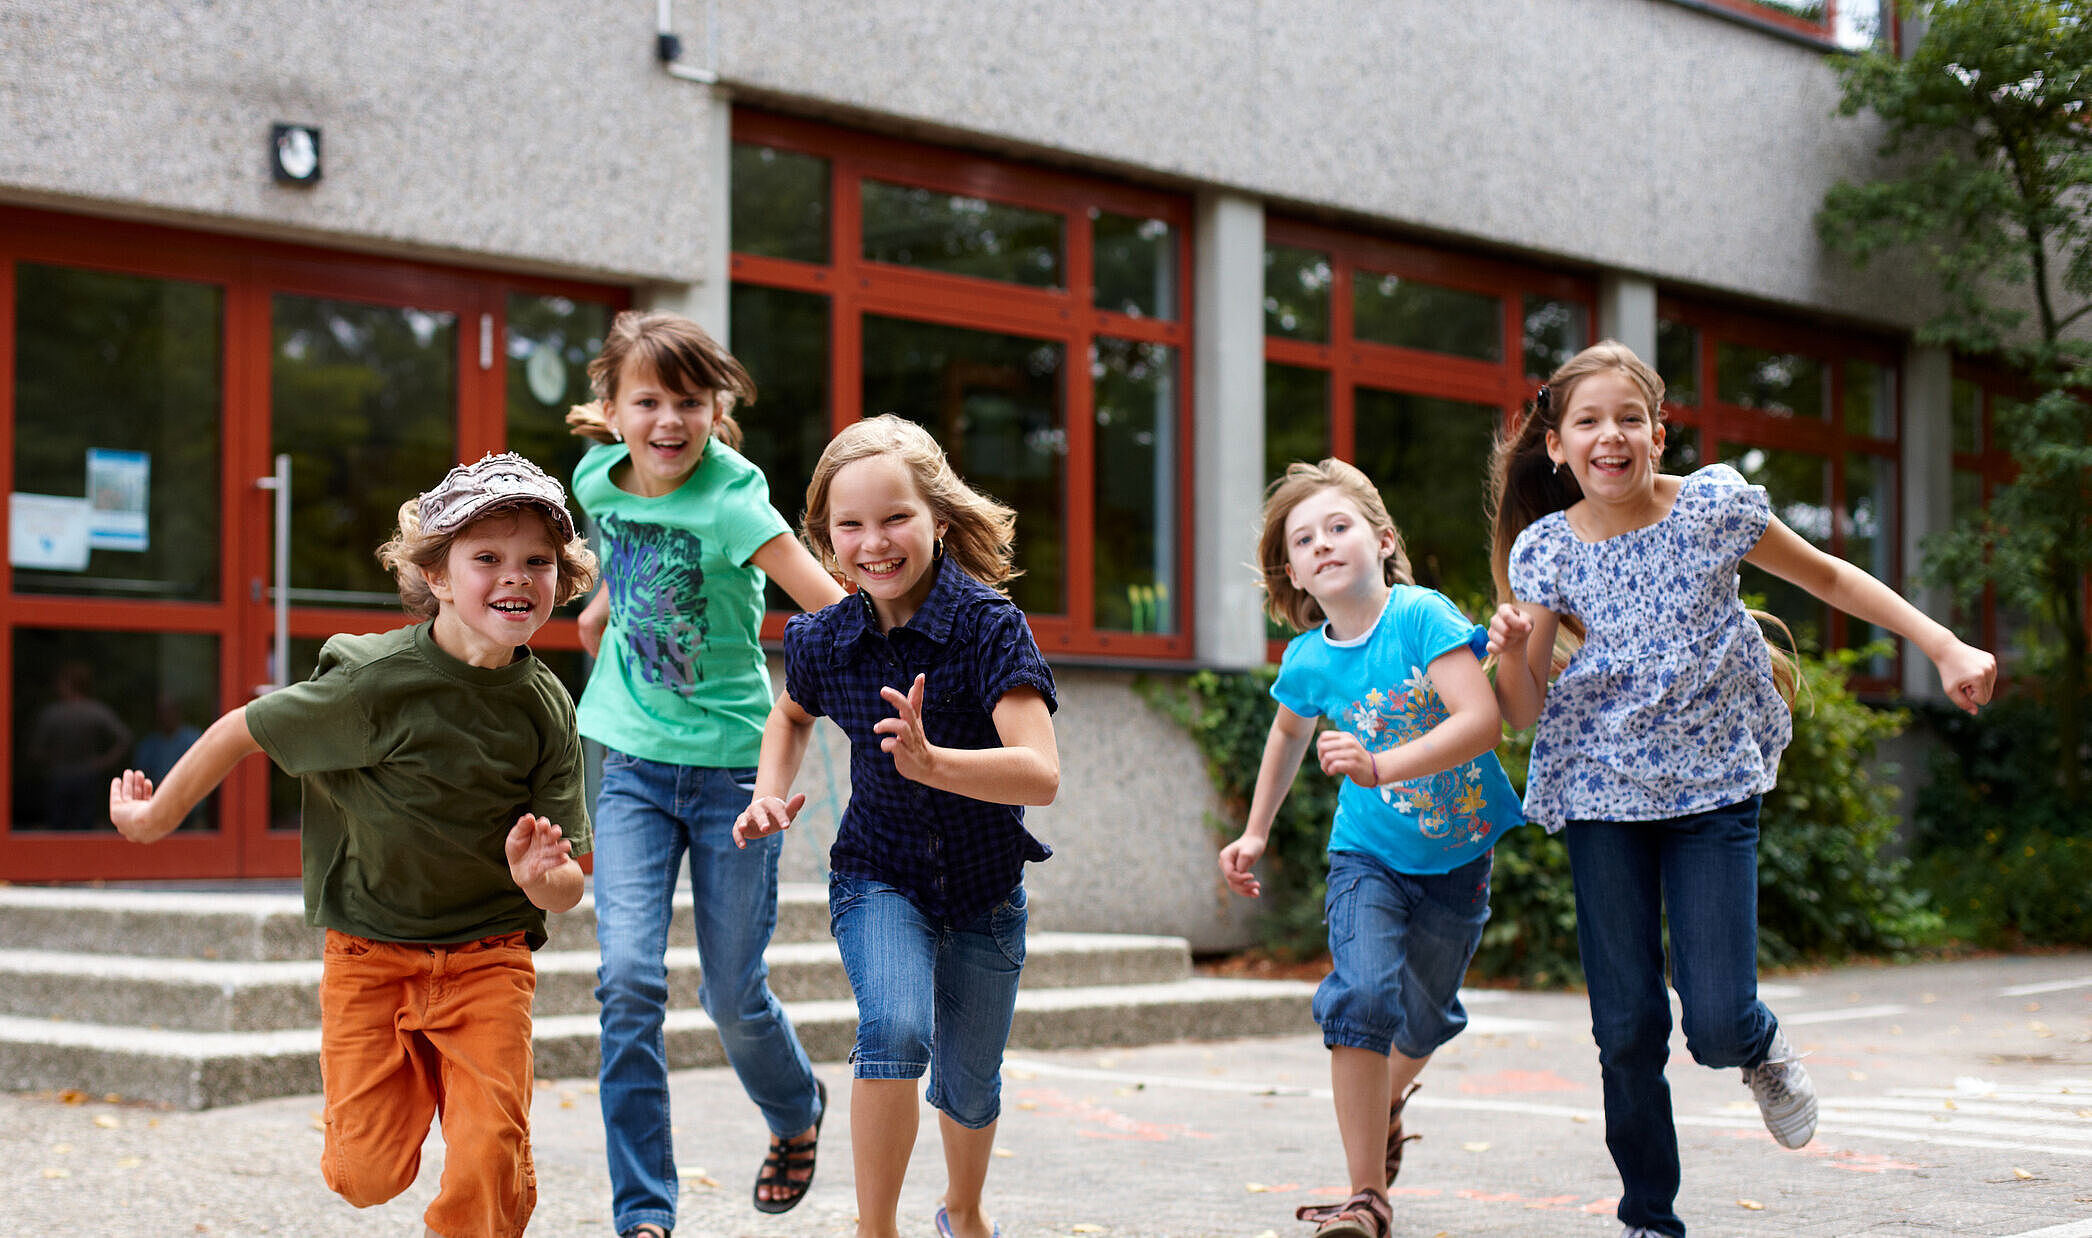 Eine Gruppe aus fünf Kindern rennt gemeinsam auf die Kamera zu.